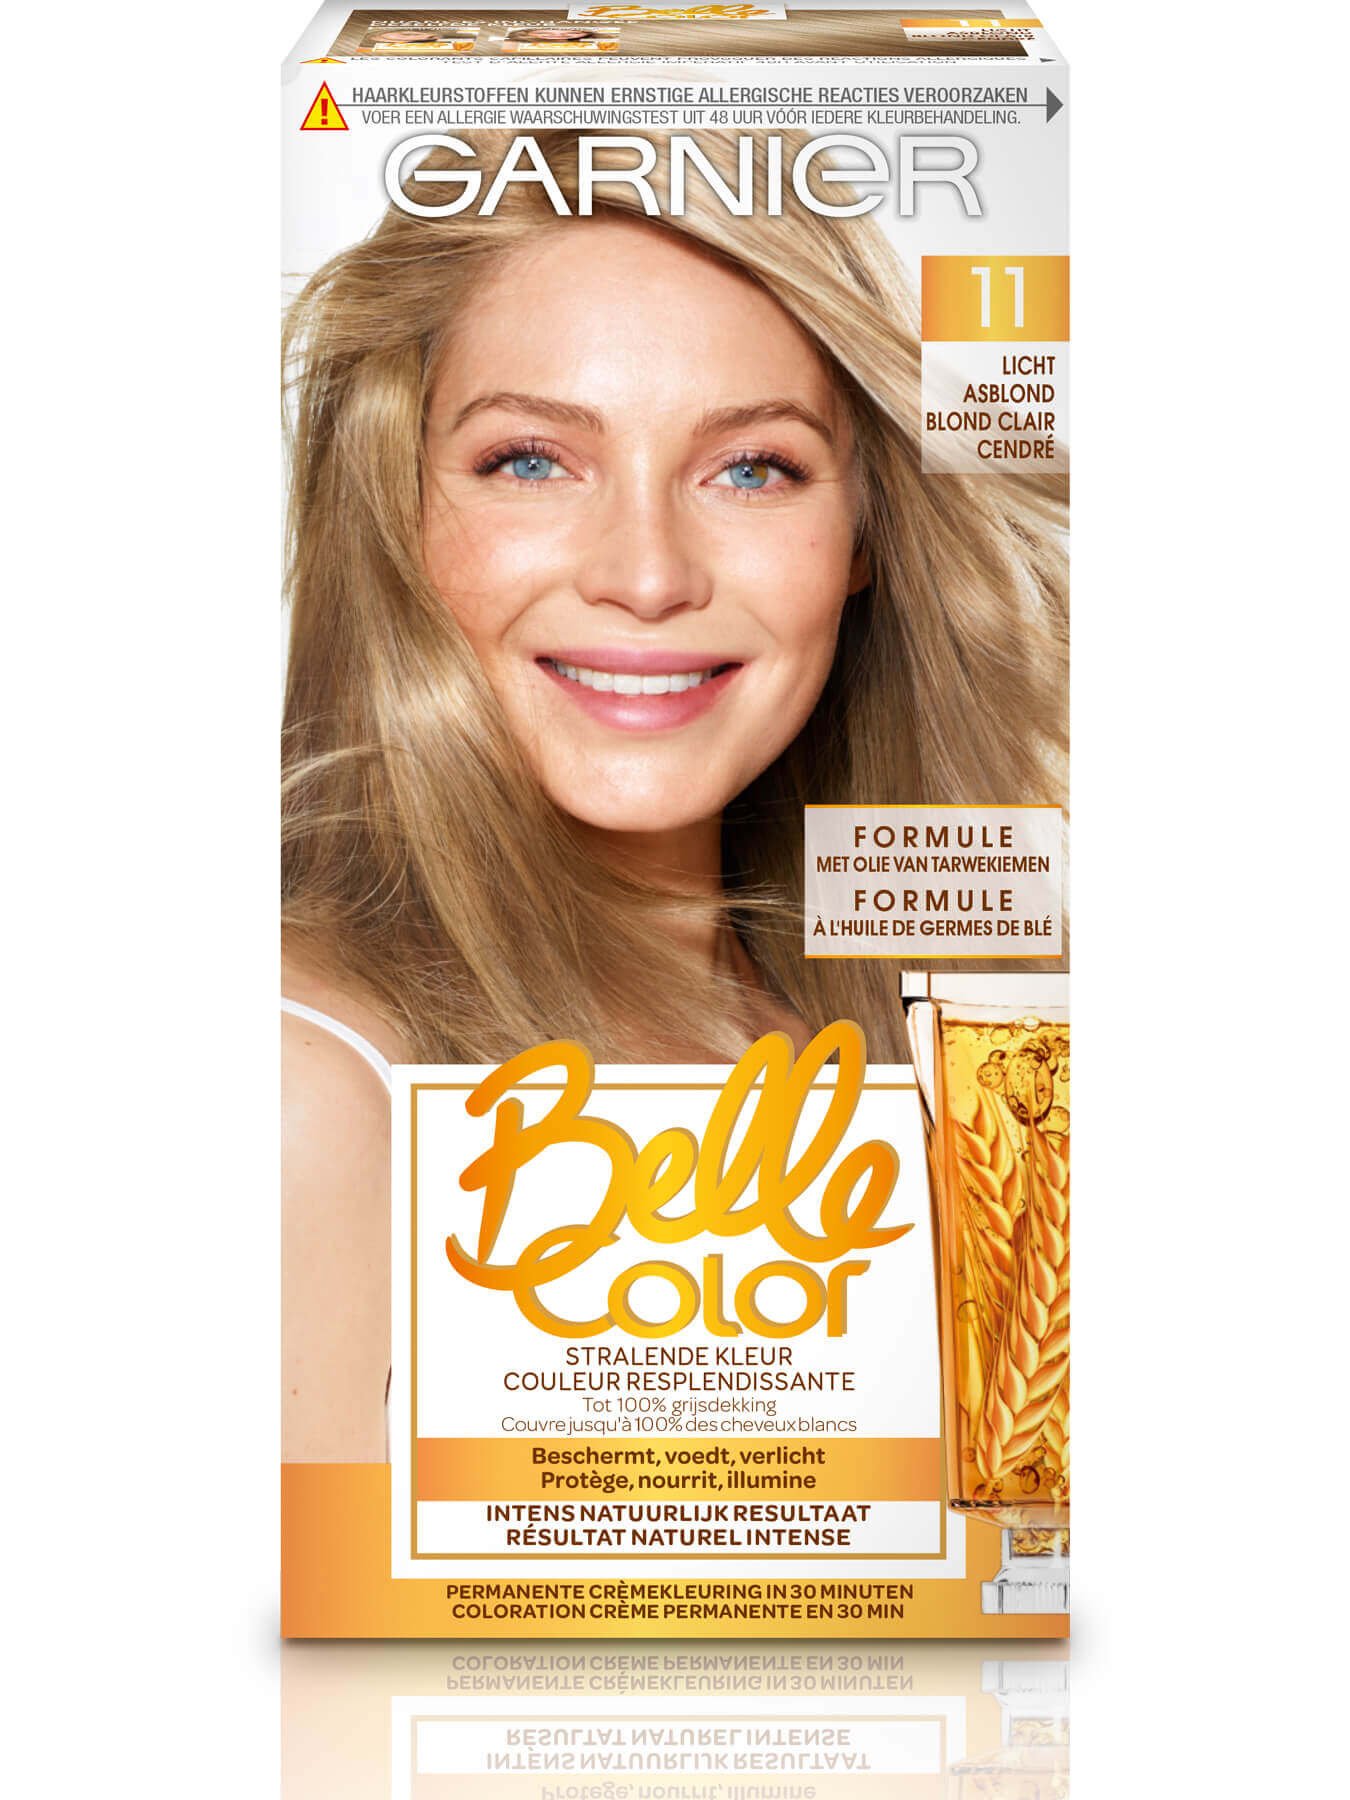 teleurstellen Calamiteit Ambacht Belle Color 11 Licht asblond Haarkleuring | Garnier Belle Color